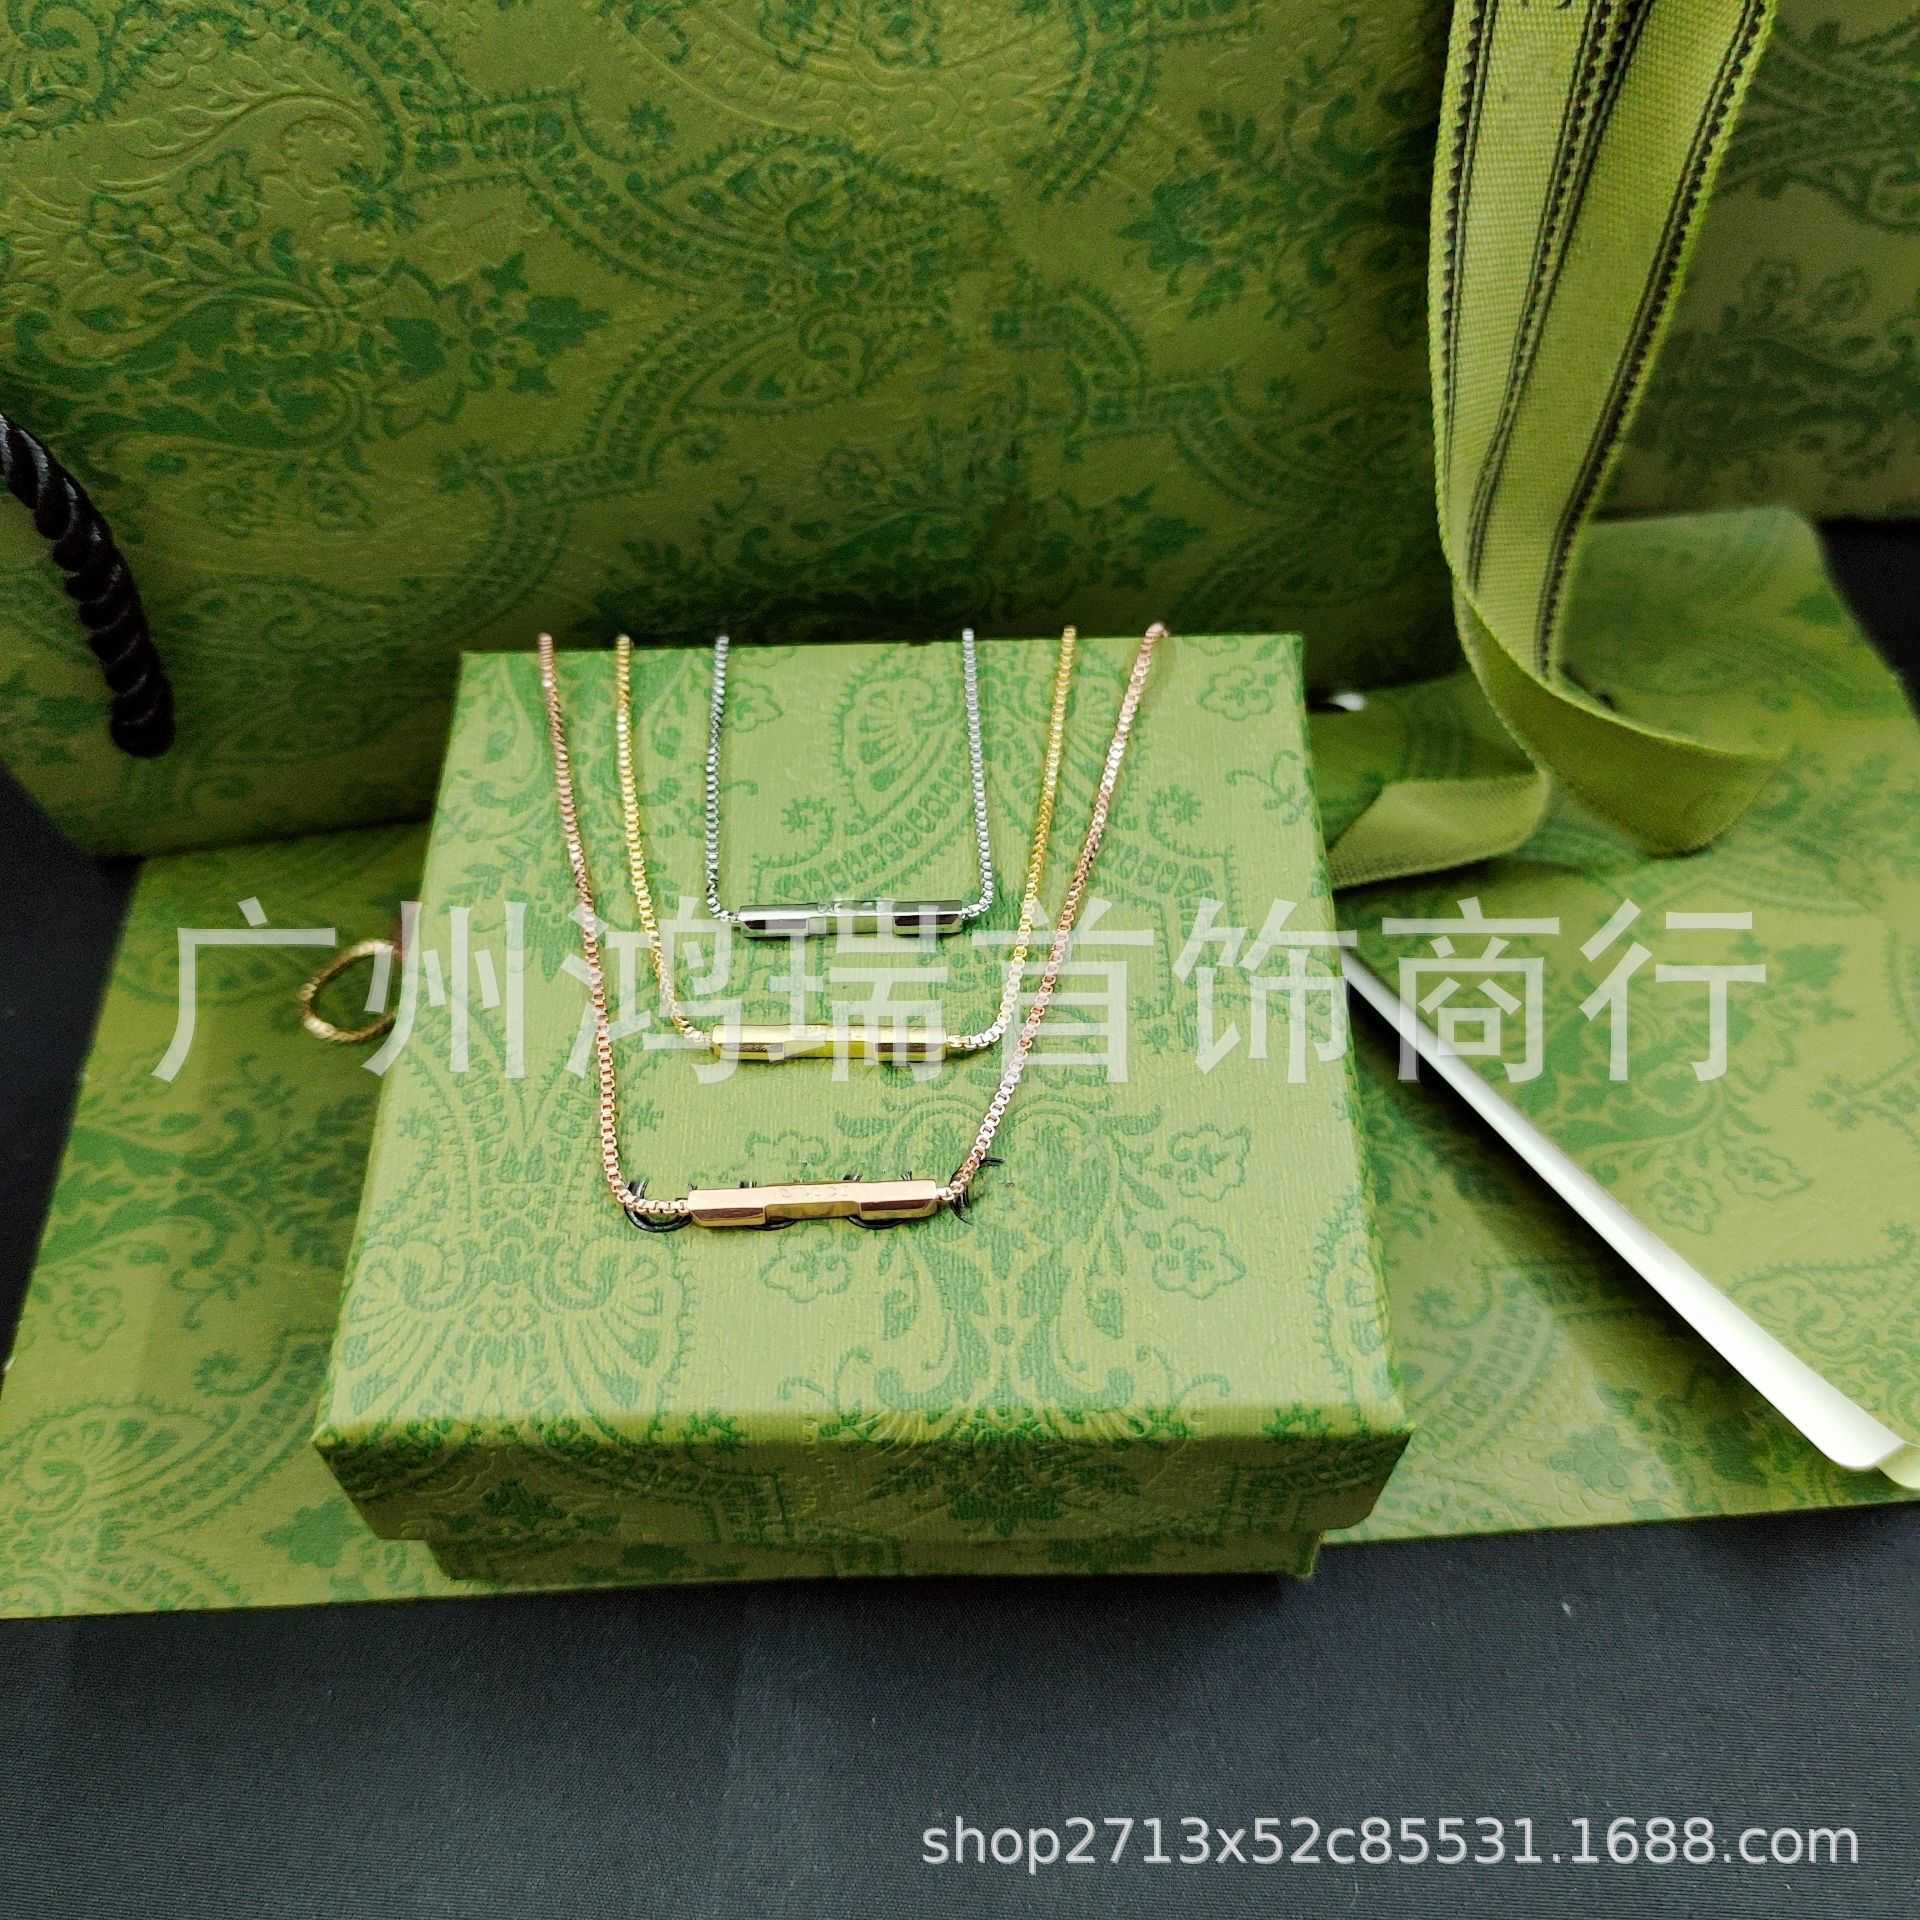 70% OFF 2023 Nouveaux bijoux de mode de haute qualité de luxe pour l'argent Xiaozhan même nouveau lien de couple à l'amour série long collier de corde